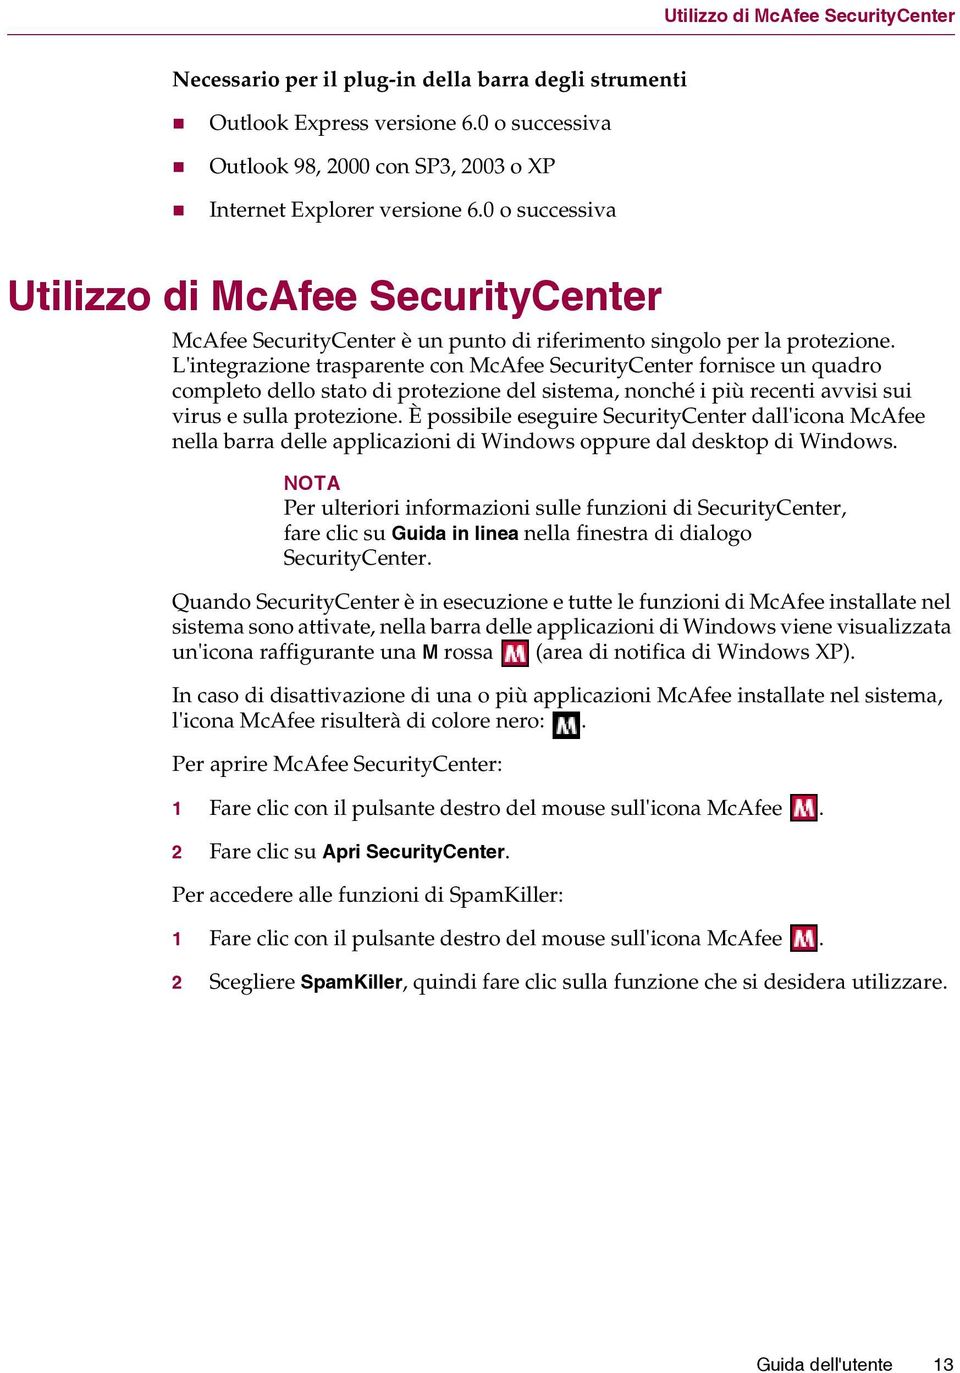 L'integrazione trasparente con McAfee SecurityCenter fornisce un quadro completo dello stato di protezione del sistema, nonché i più recenti avvisi sui virus e sulla protezione.